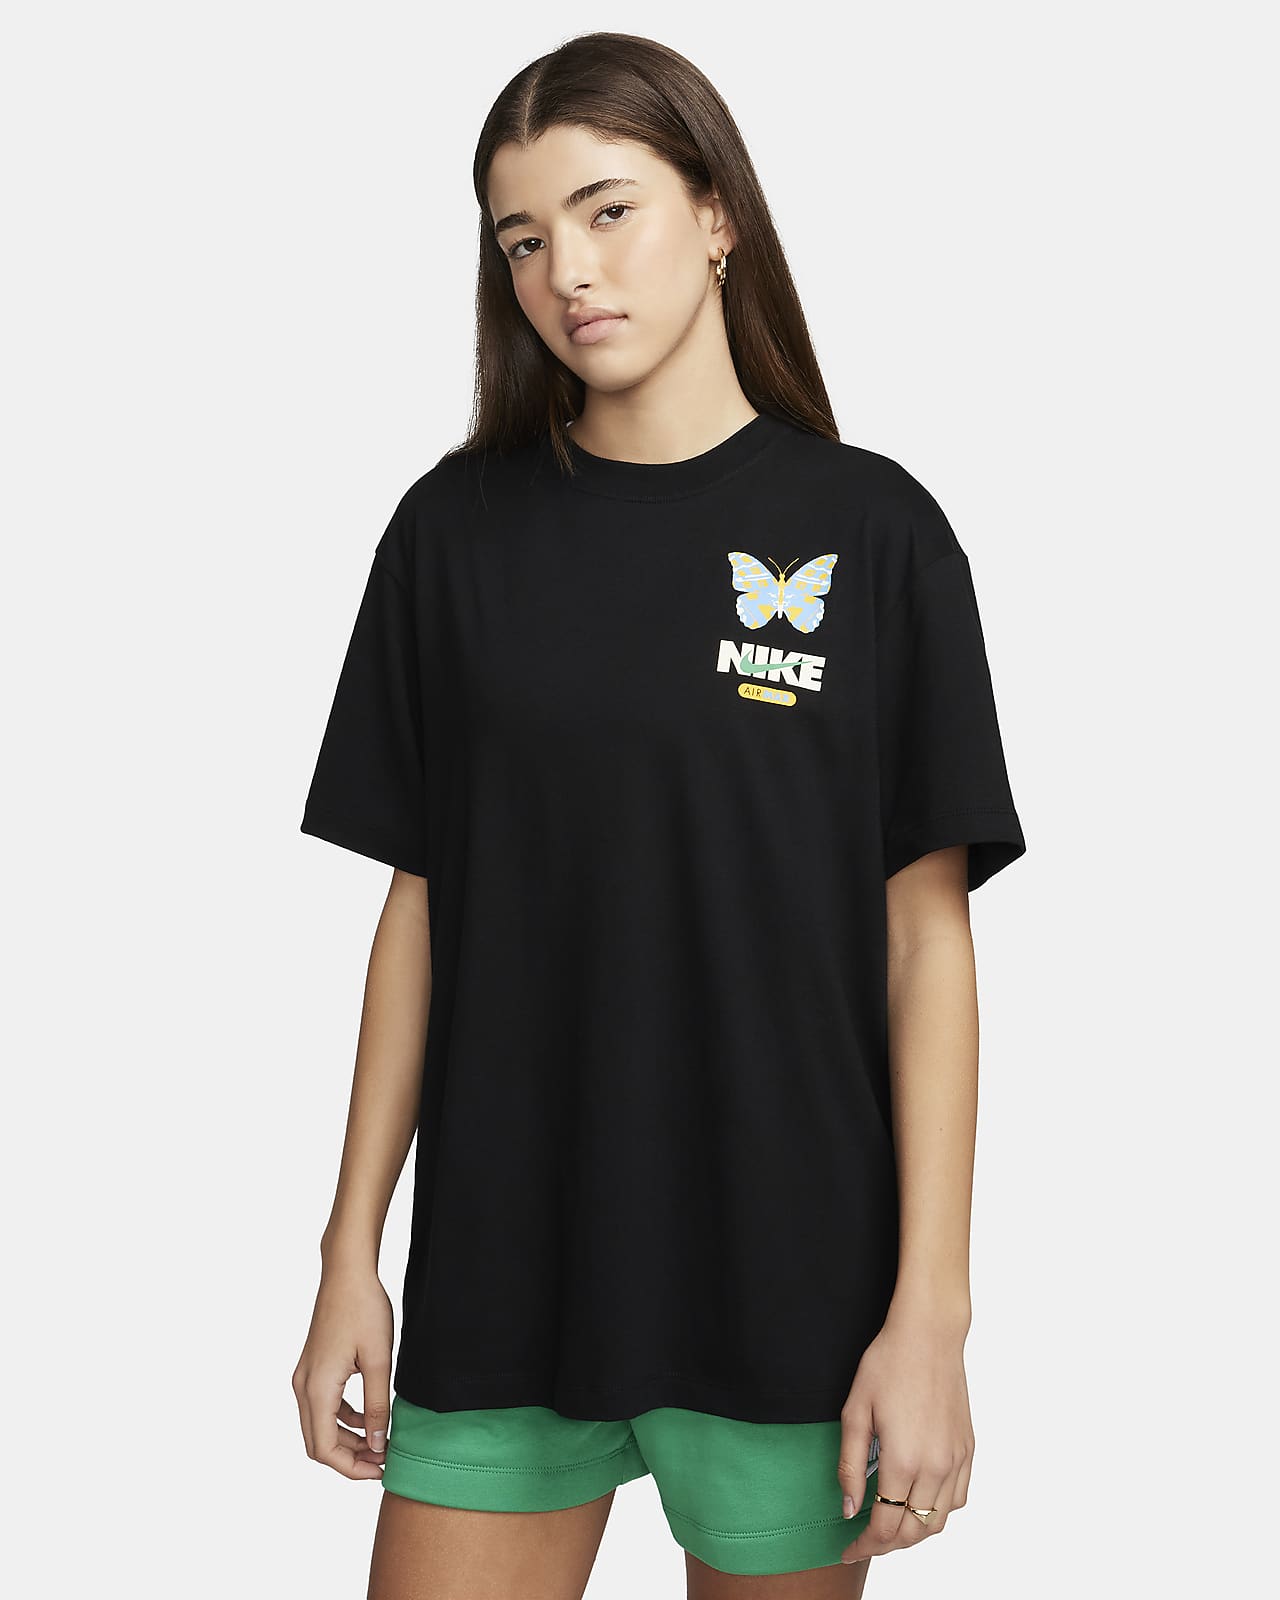 Nike Sportswear Women's Graphic Boyfriend T-Shirt